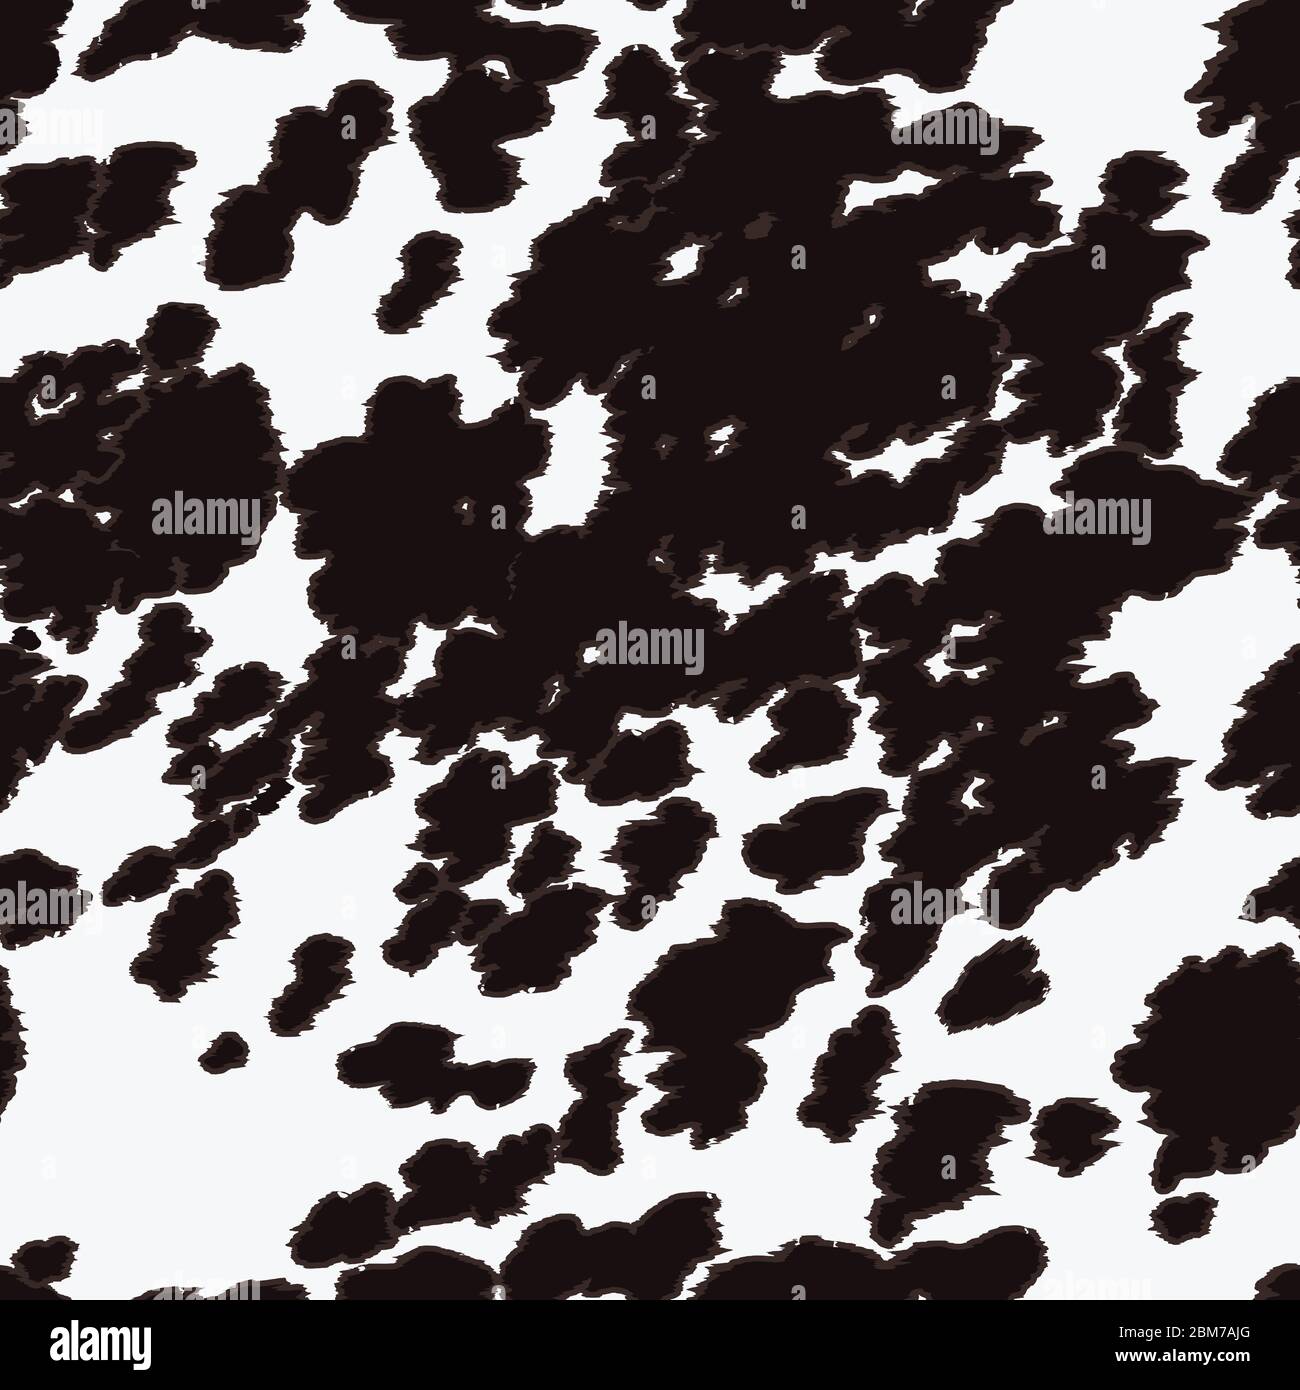 Nahtloses Longhorn Kuh/Pferd-Muster-Design mit schwarzen Punkten auf weiß. Vektor Tier-Print Strukturmuster mit schwarzen Flecken auf weißem Hintergrund Stock Vektor